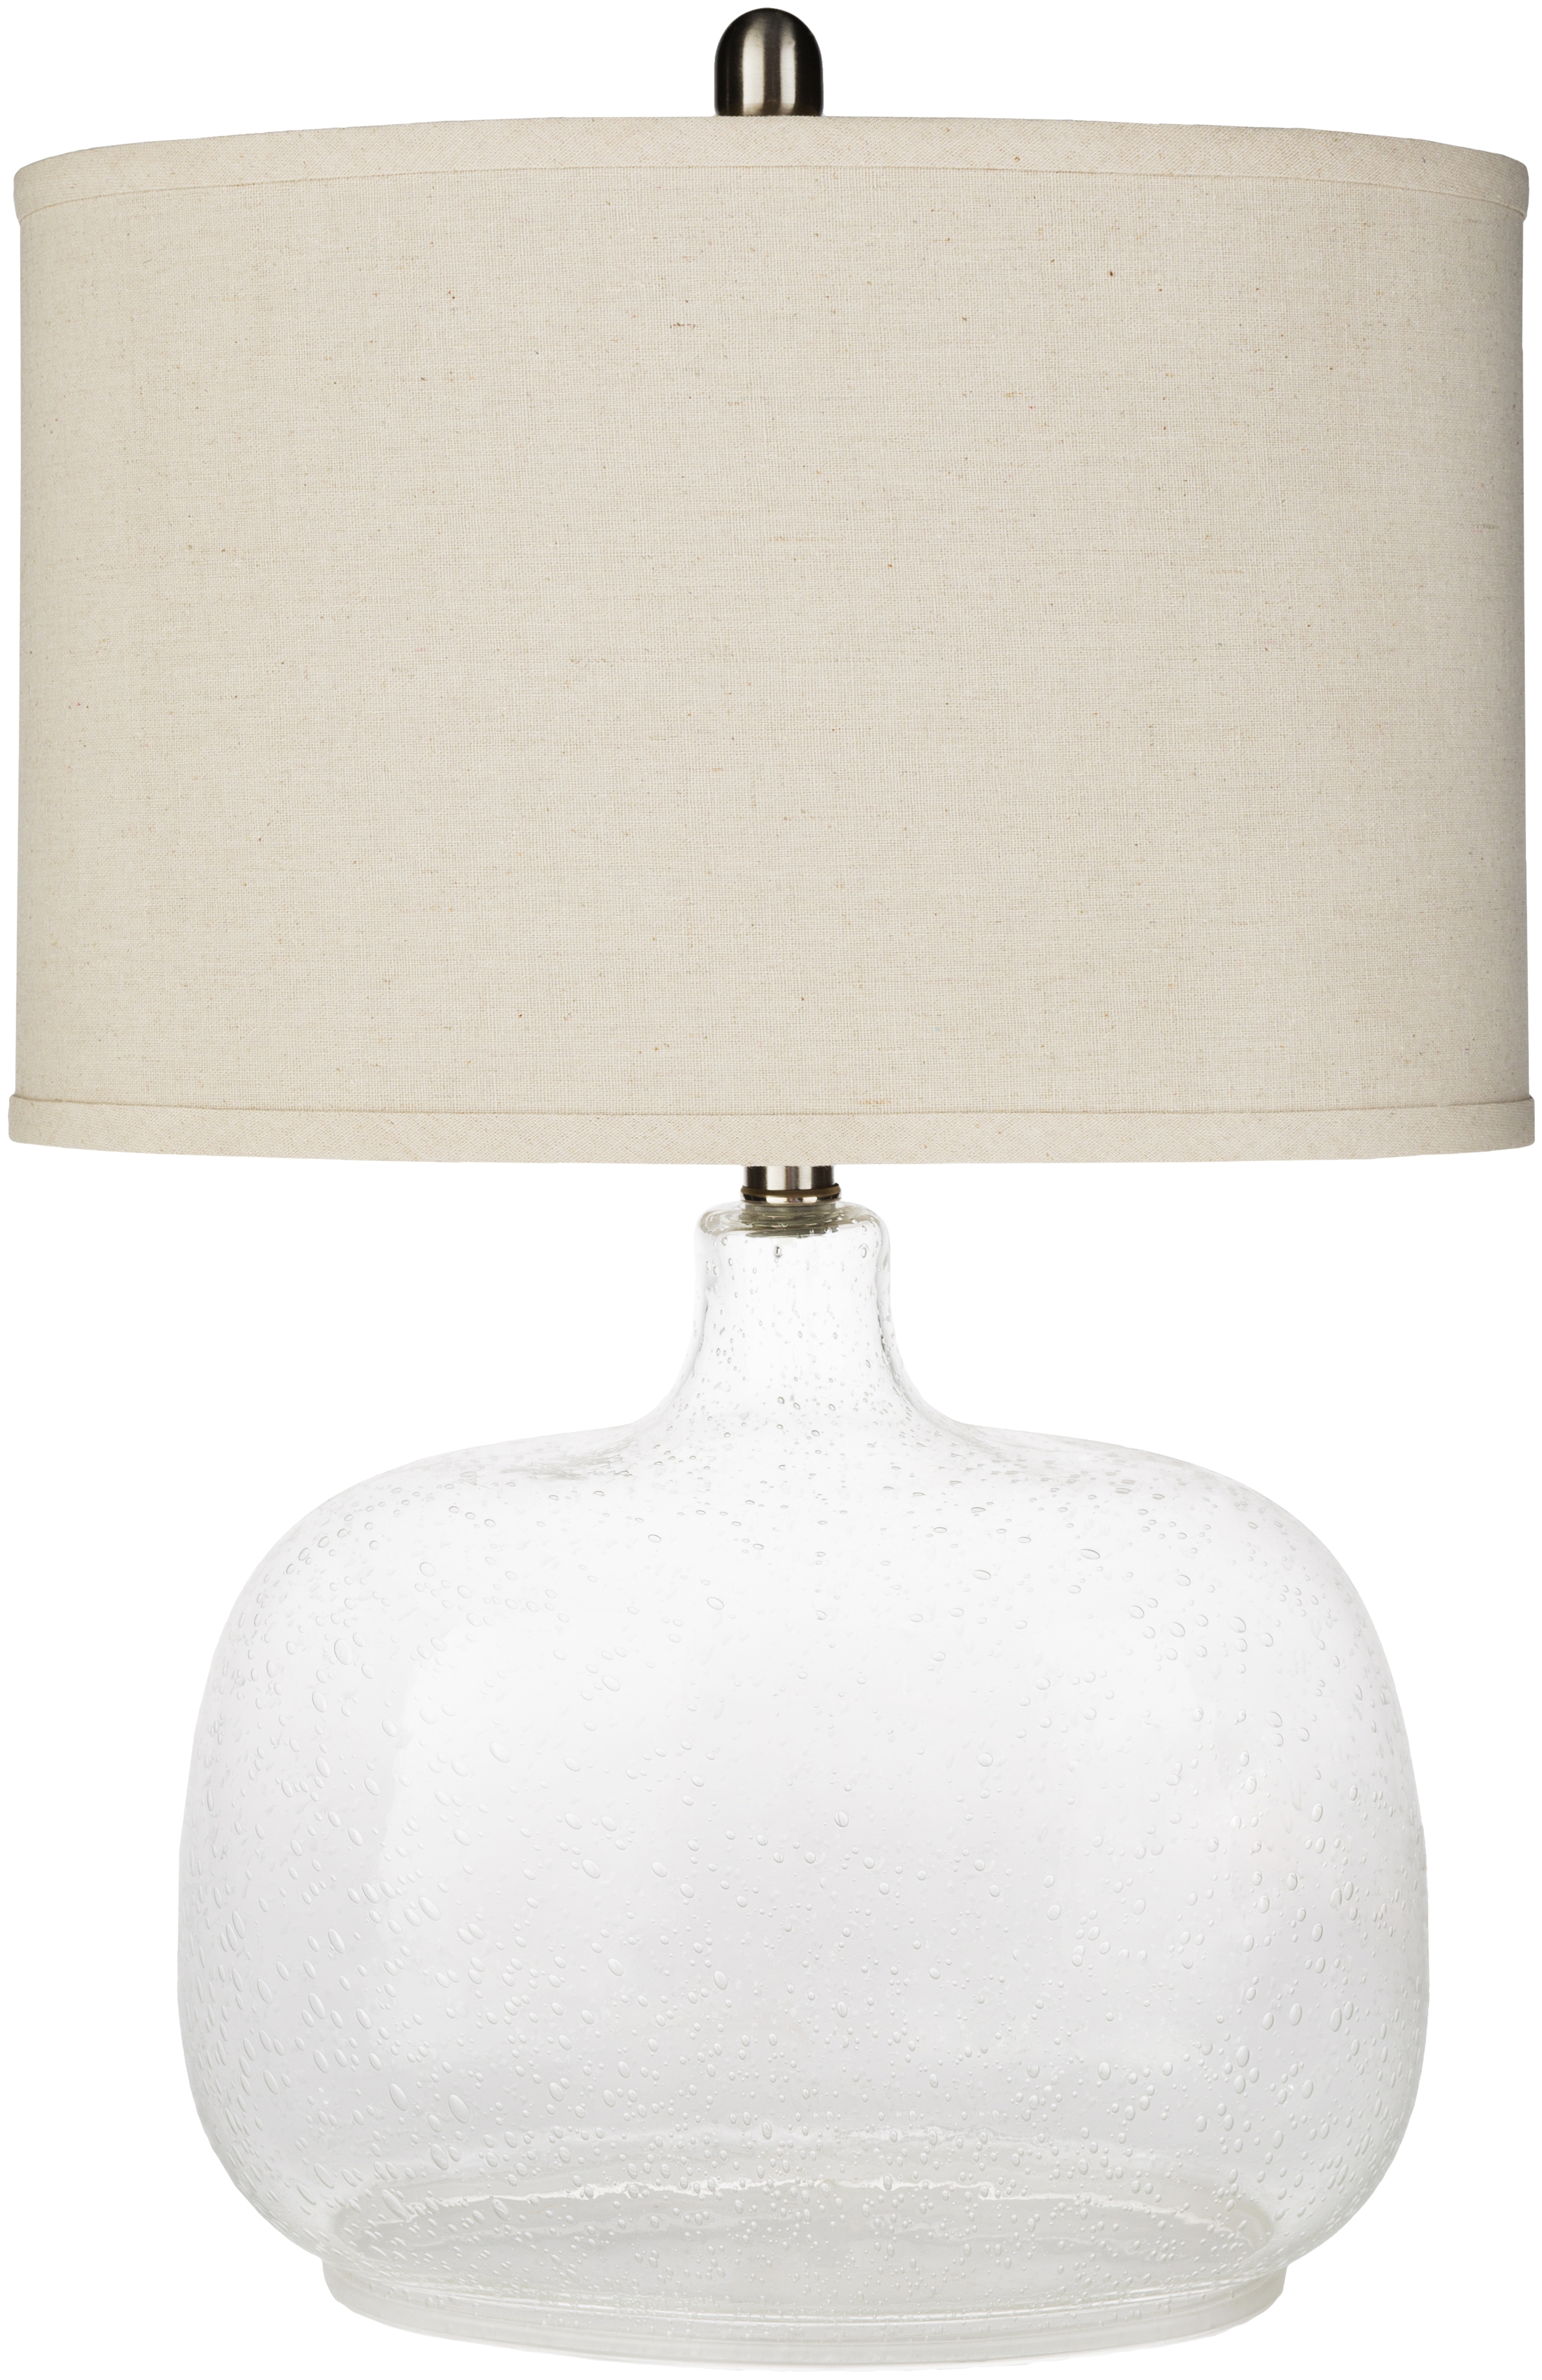 Bentley Table Lamp - Image 0